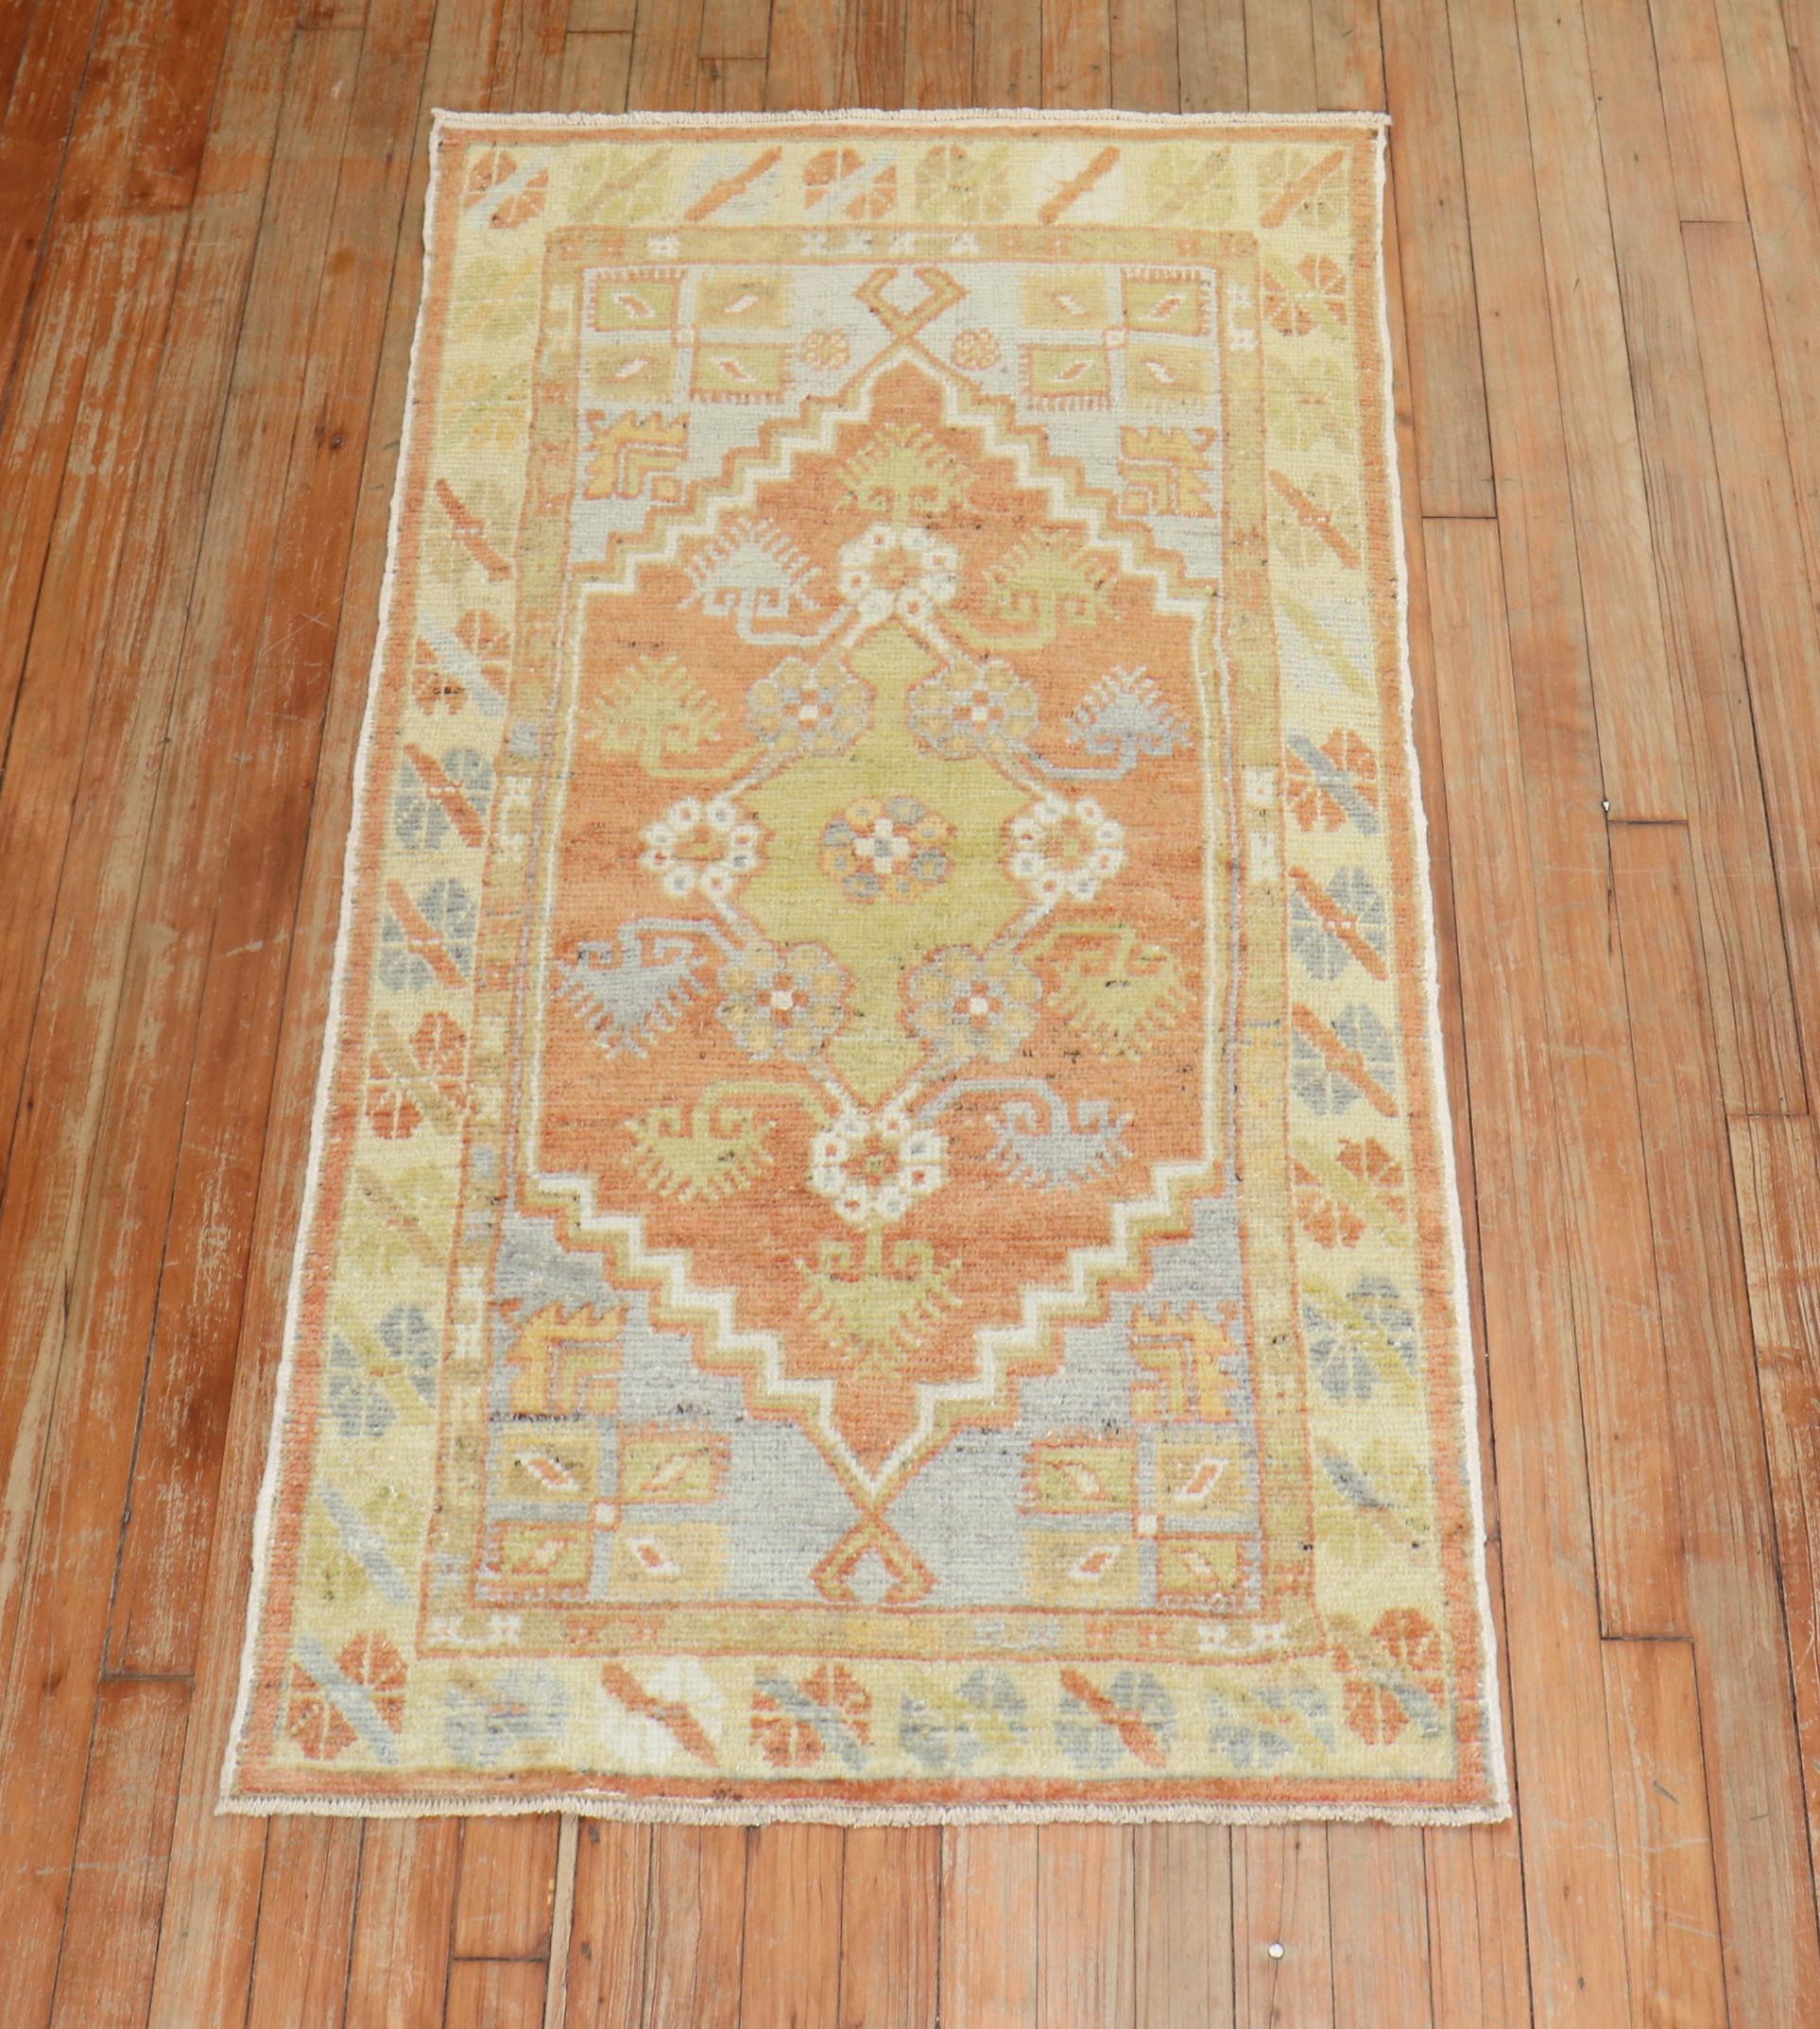 türkischer anatolischer teppich aus der mitte des 20. jahrhunderts in warmen farben

Teppich nein.	31744
Größe	2' 6